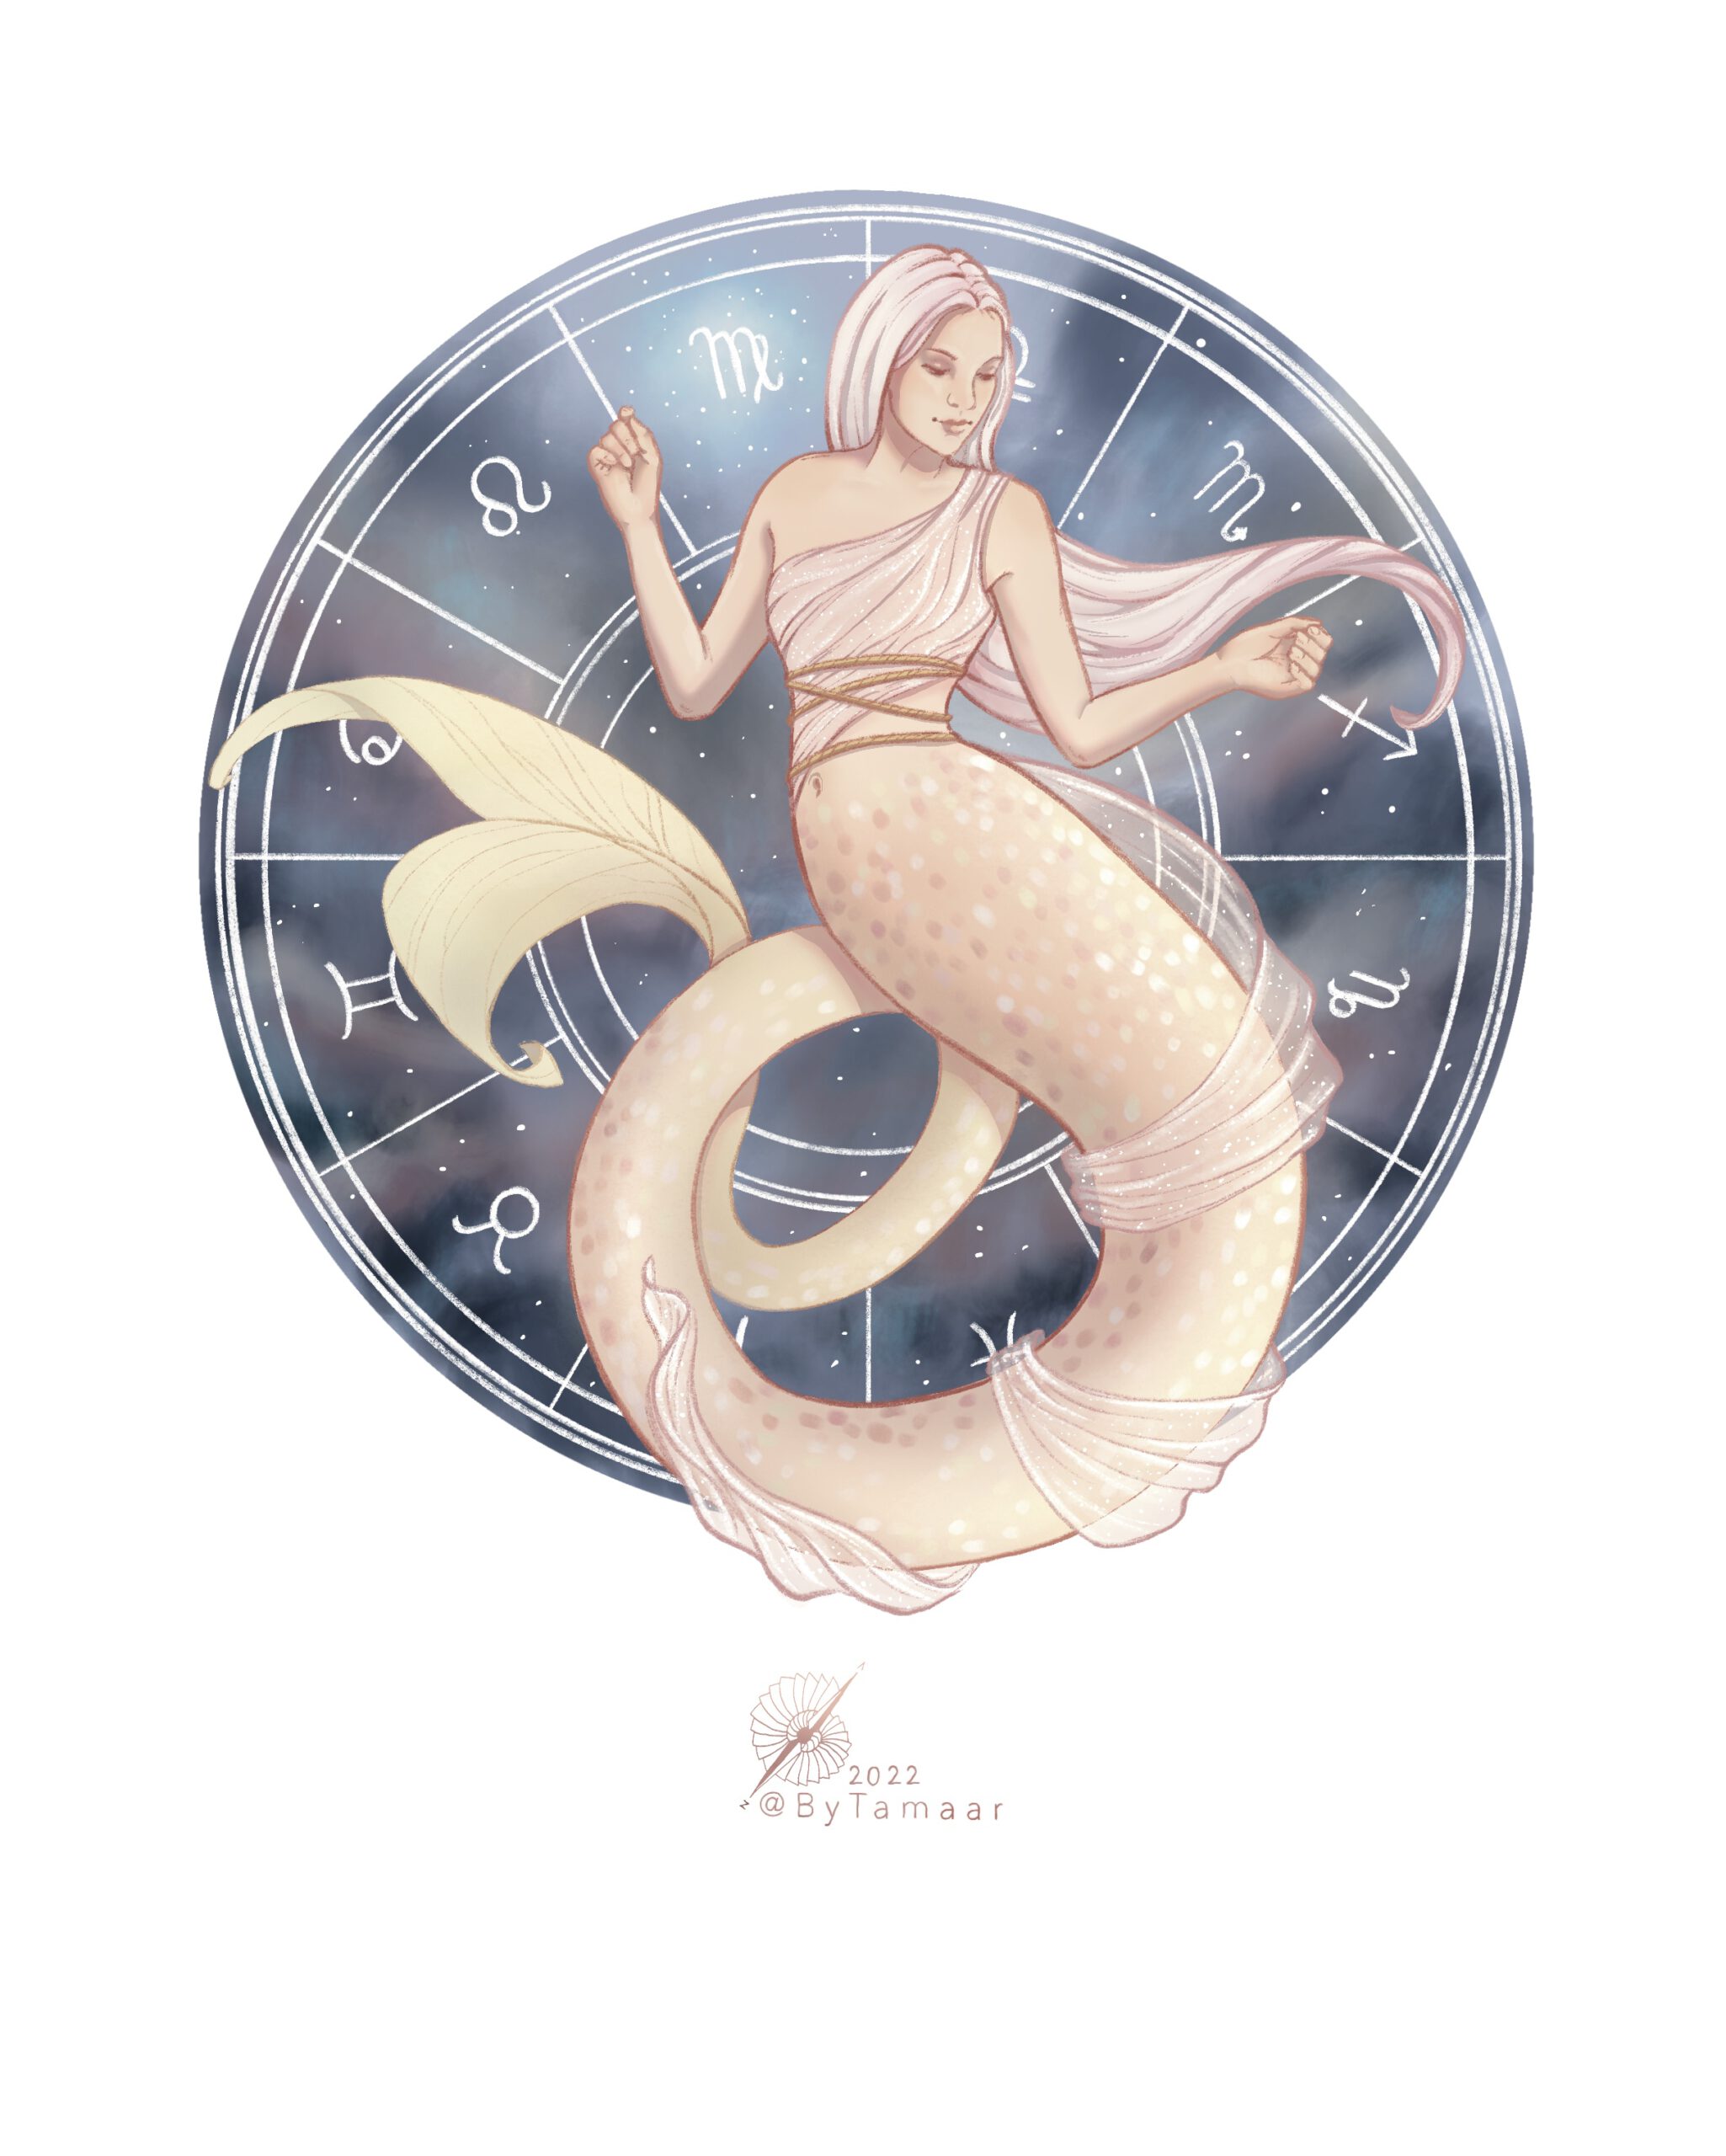 Mermaid_Of_Virgo